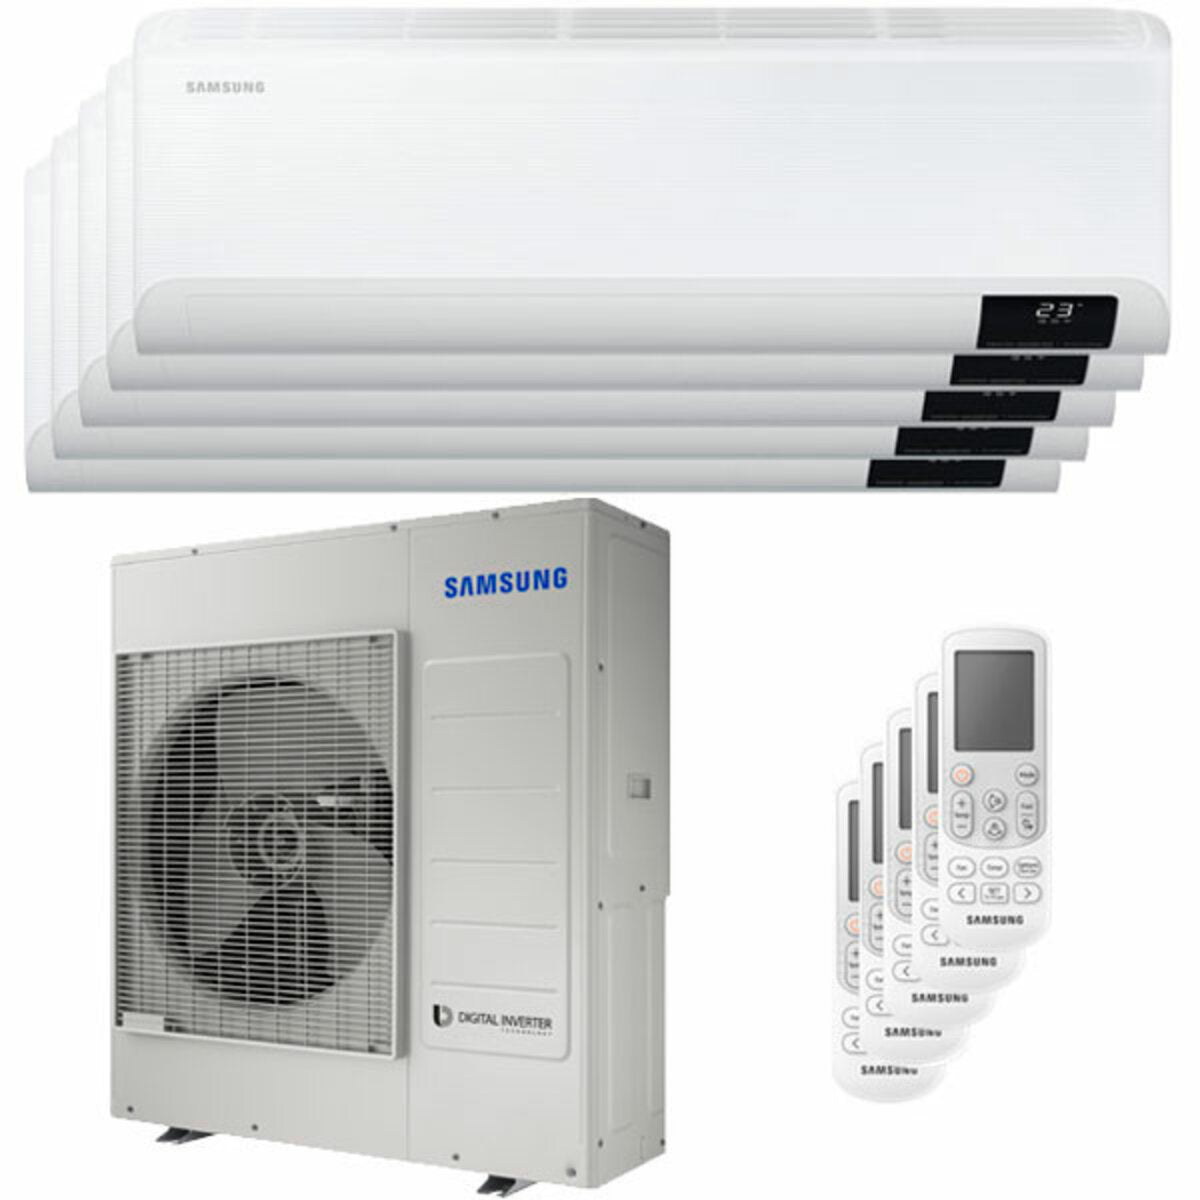 Samsung Cebu WLAN Klimaanlage Penta Split 7000 + 7000 + 7000 + 12000 + 12000 BTU Wechselrichter A++ WLAN Außengerät 10,0 kW